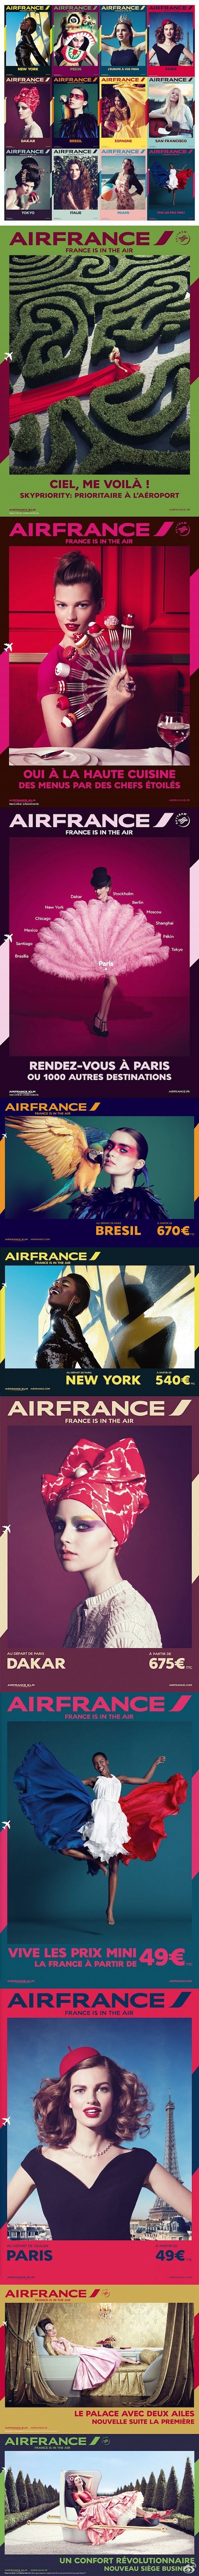 充满法式风情的法航海报-法国航空最近拍摄...